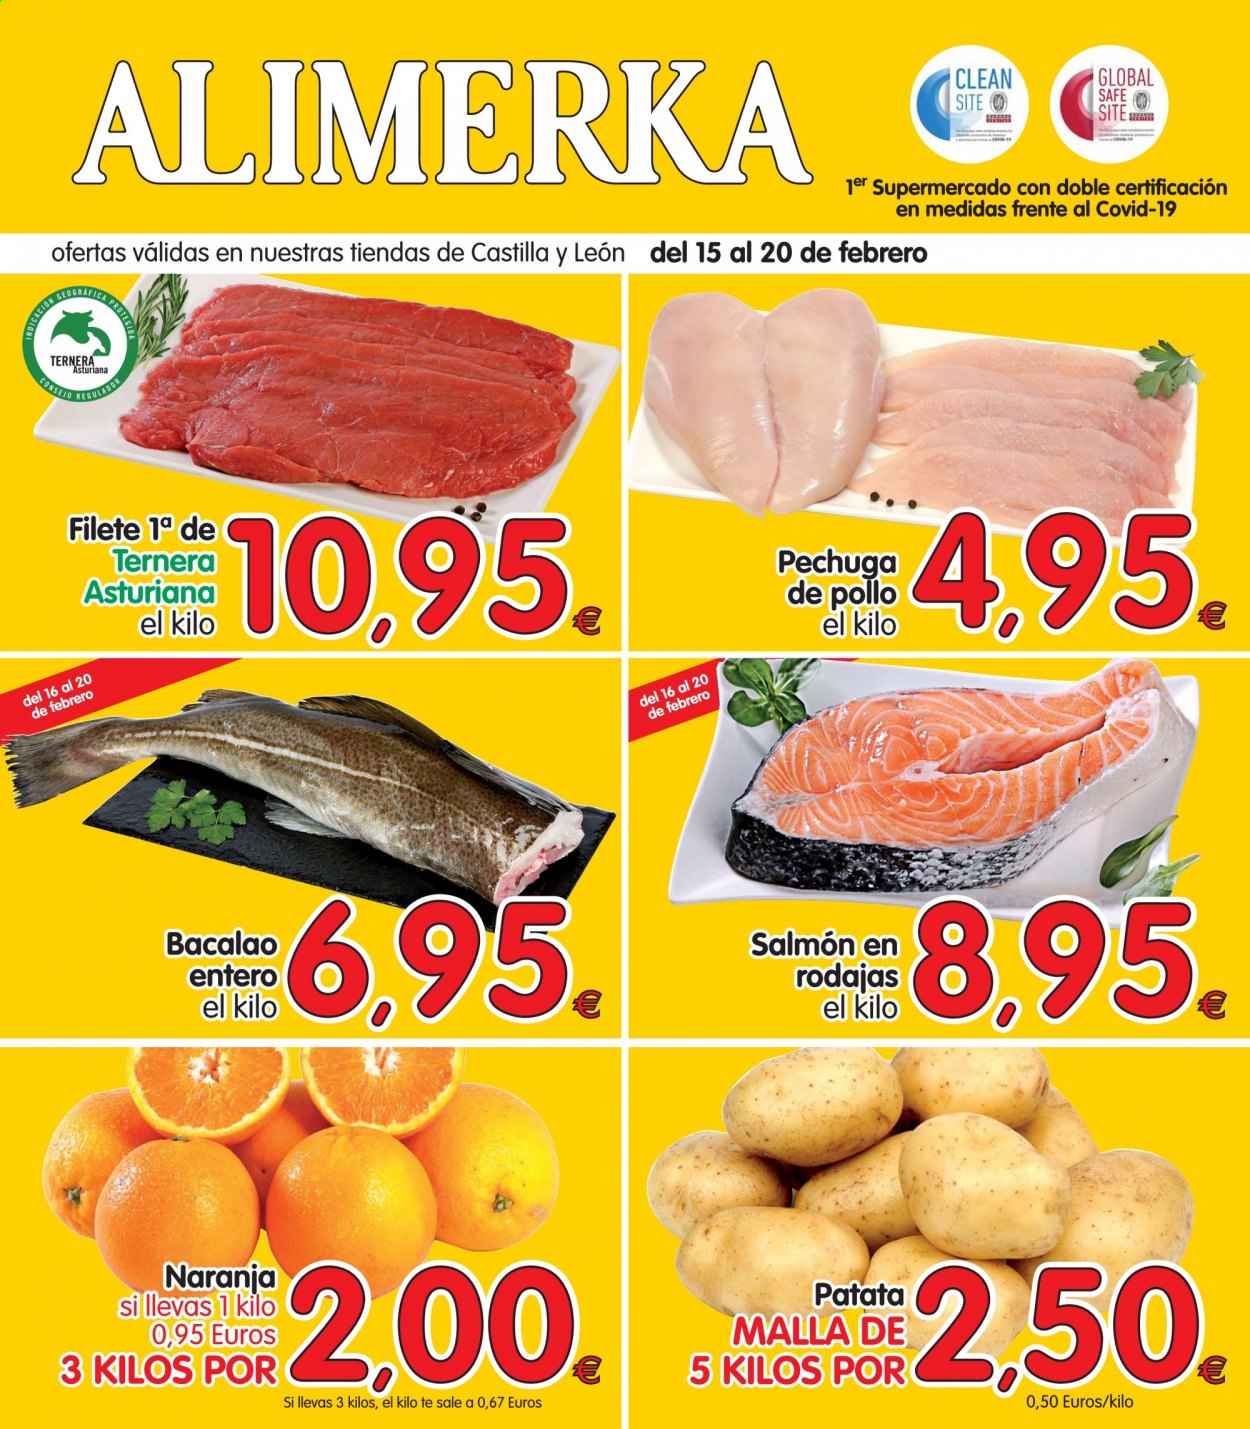 thumbnail - Folleto actual Alimerka - 15/02/21 - 20/02/21 - Ventas - pechuga de pollo, pollo, carne de ternera, naranja, patatas, bacalao, salmón. Página 1.